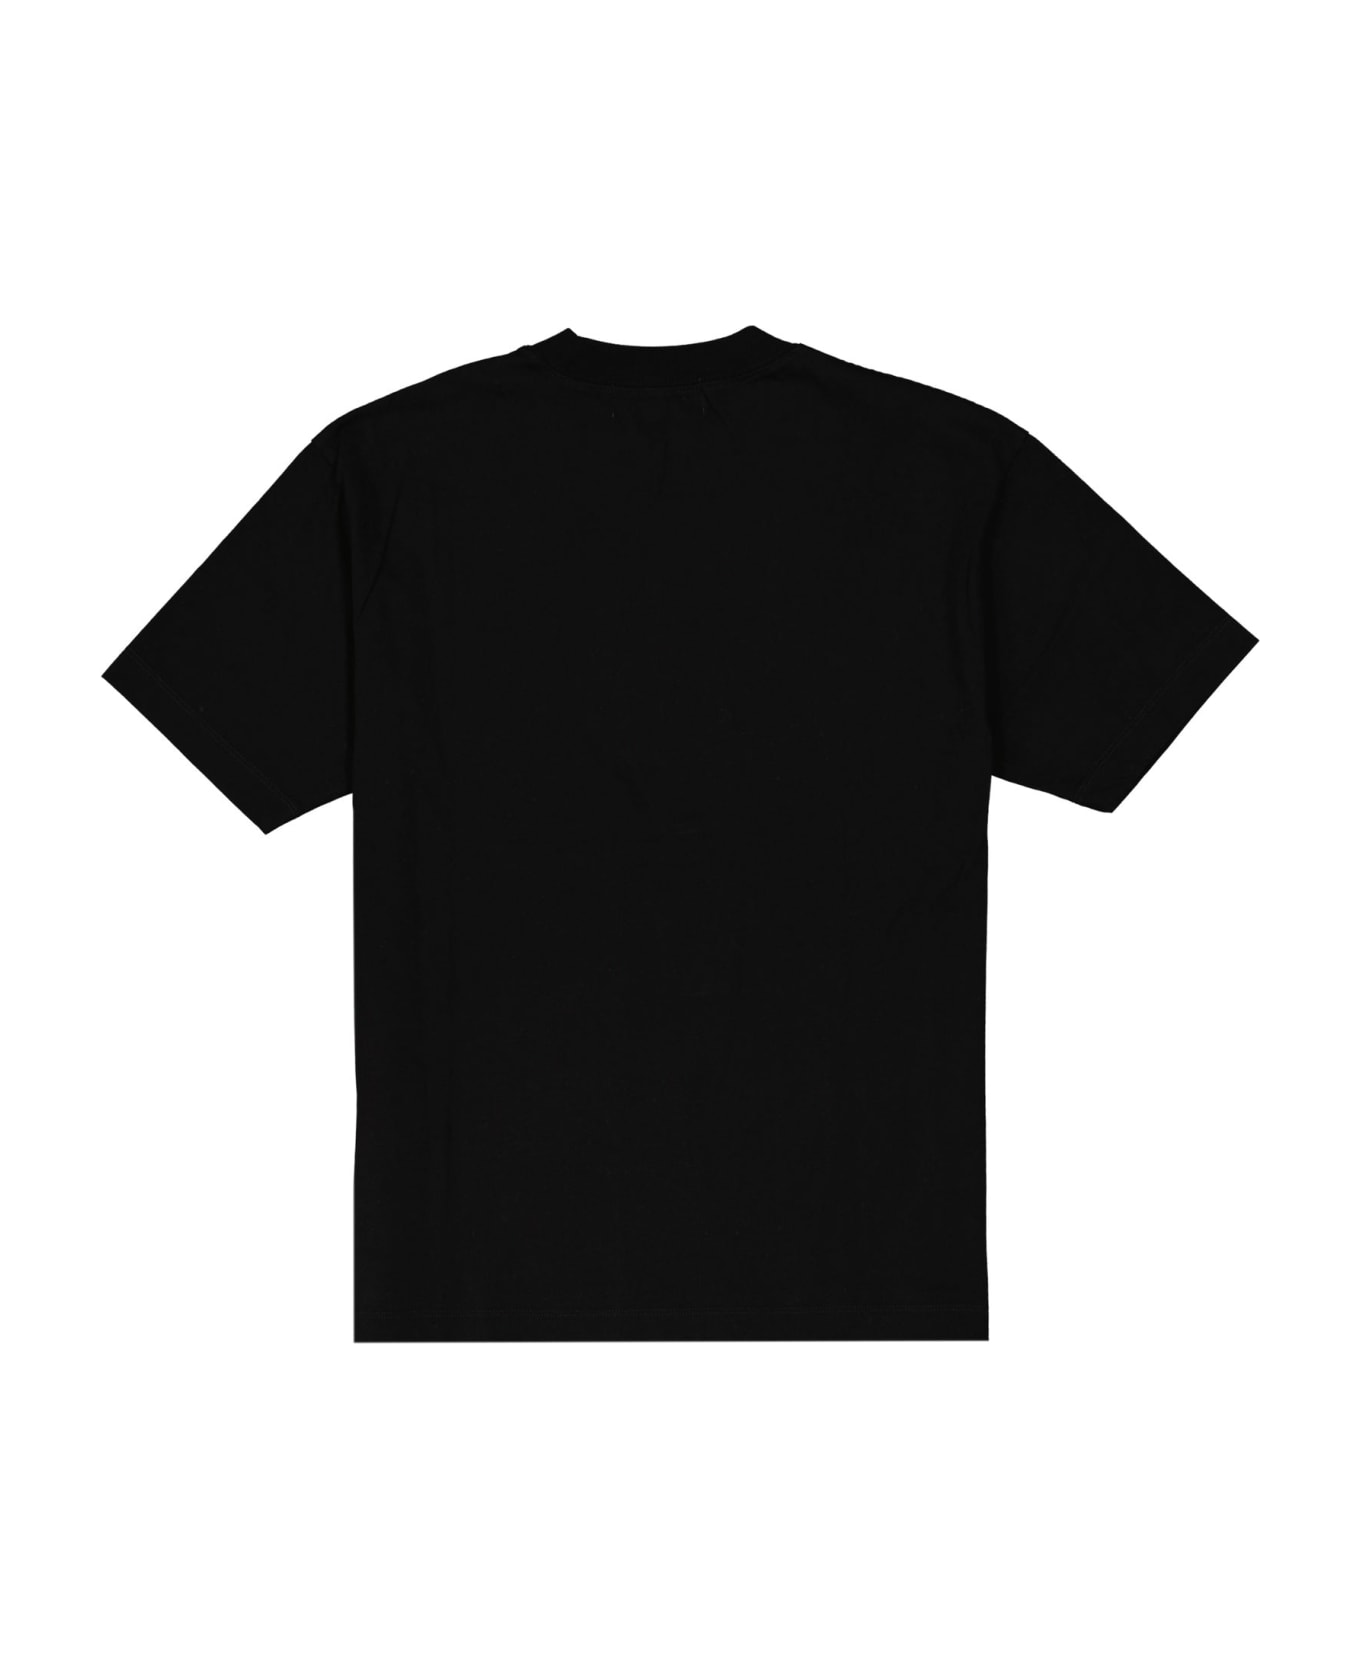 AMBUSH Cotton Logo T-shirt - Black Tシャツ